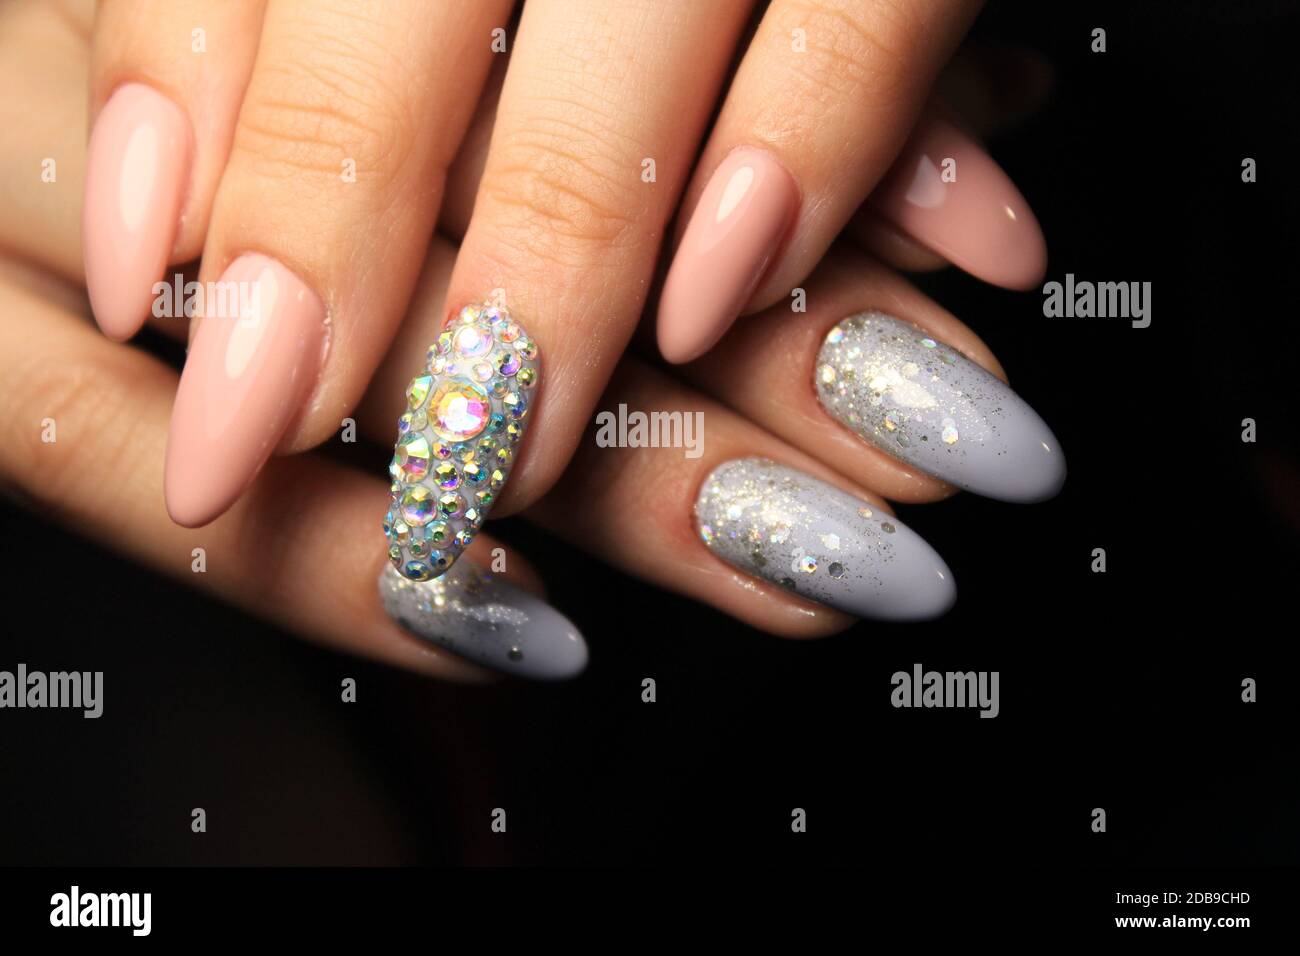 Pin by Sofy on nail idea | Dipped nails, Gel nails, Perfect nails